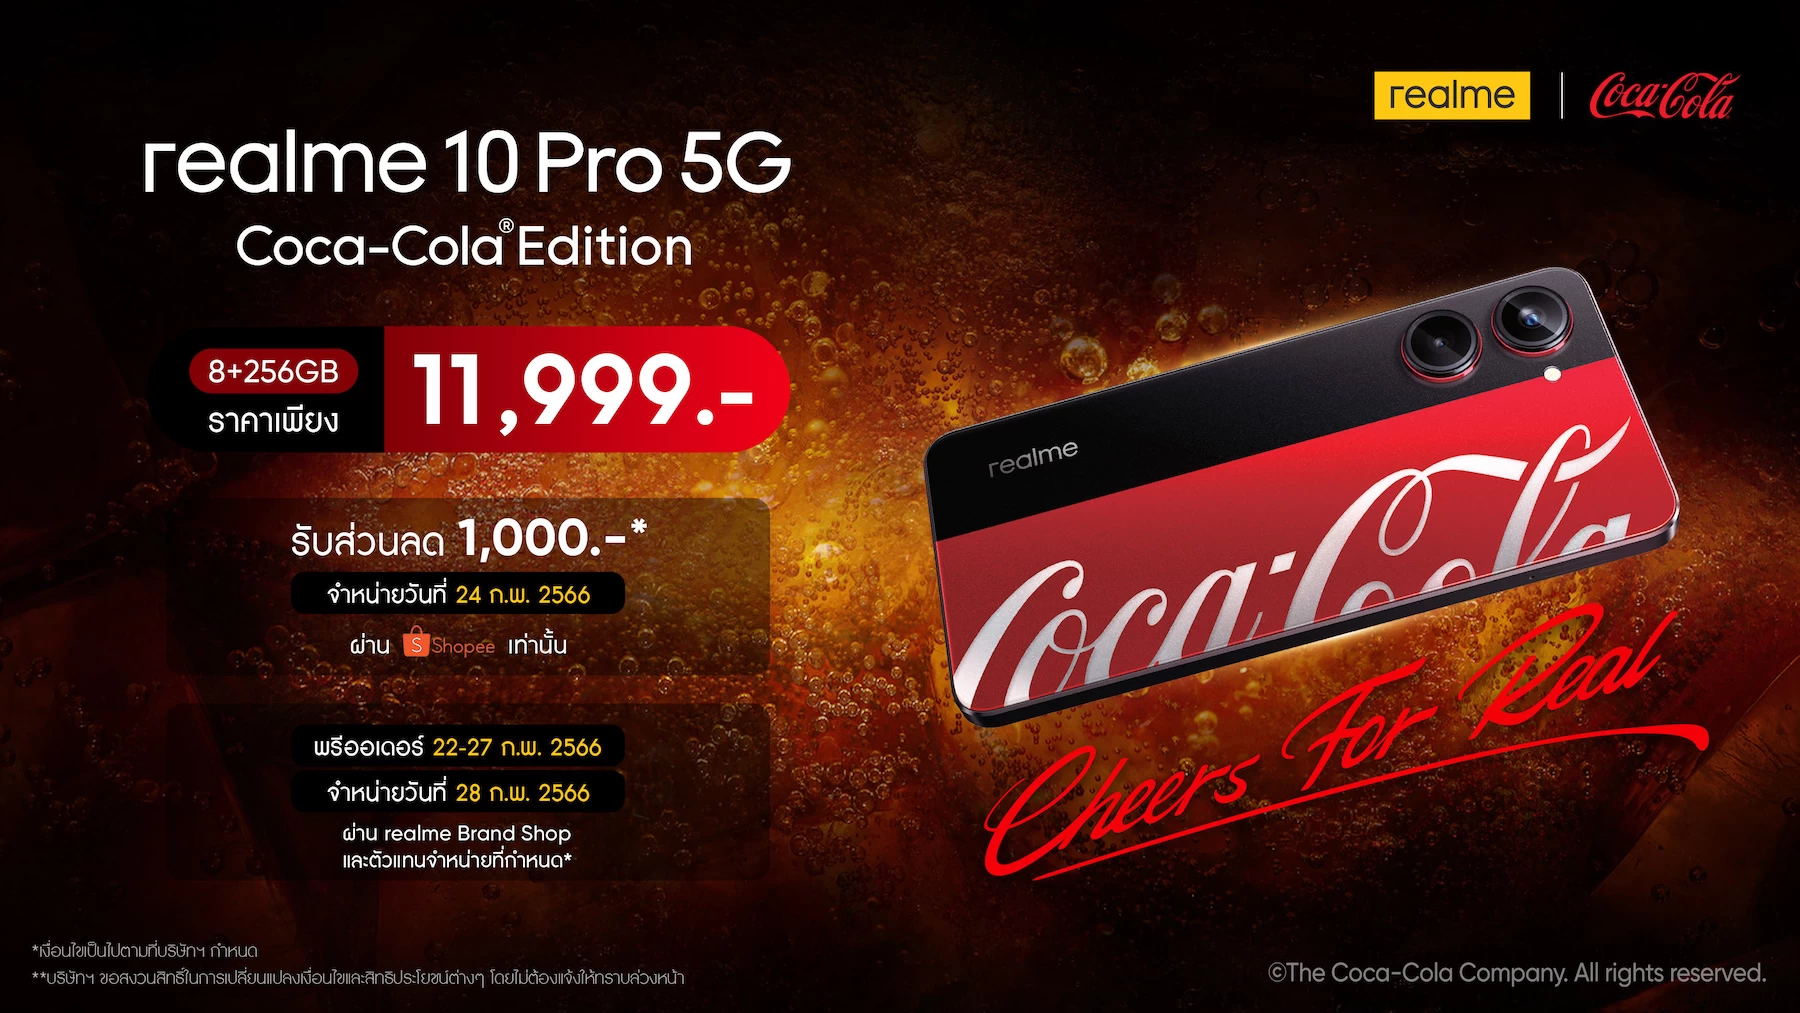 2เปิดตัว realme 10 Pro 5G Coca Cola ราคา 11999 บาท | Coca-Cola Edition | รวมข้อมูล realme 10 Pro 5G Coca-Cola Edition รุ่นพิเศษสายโค๊ก เปิดราคา 11,999 บาท